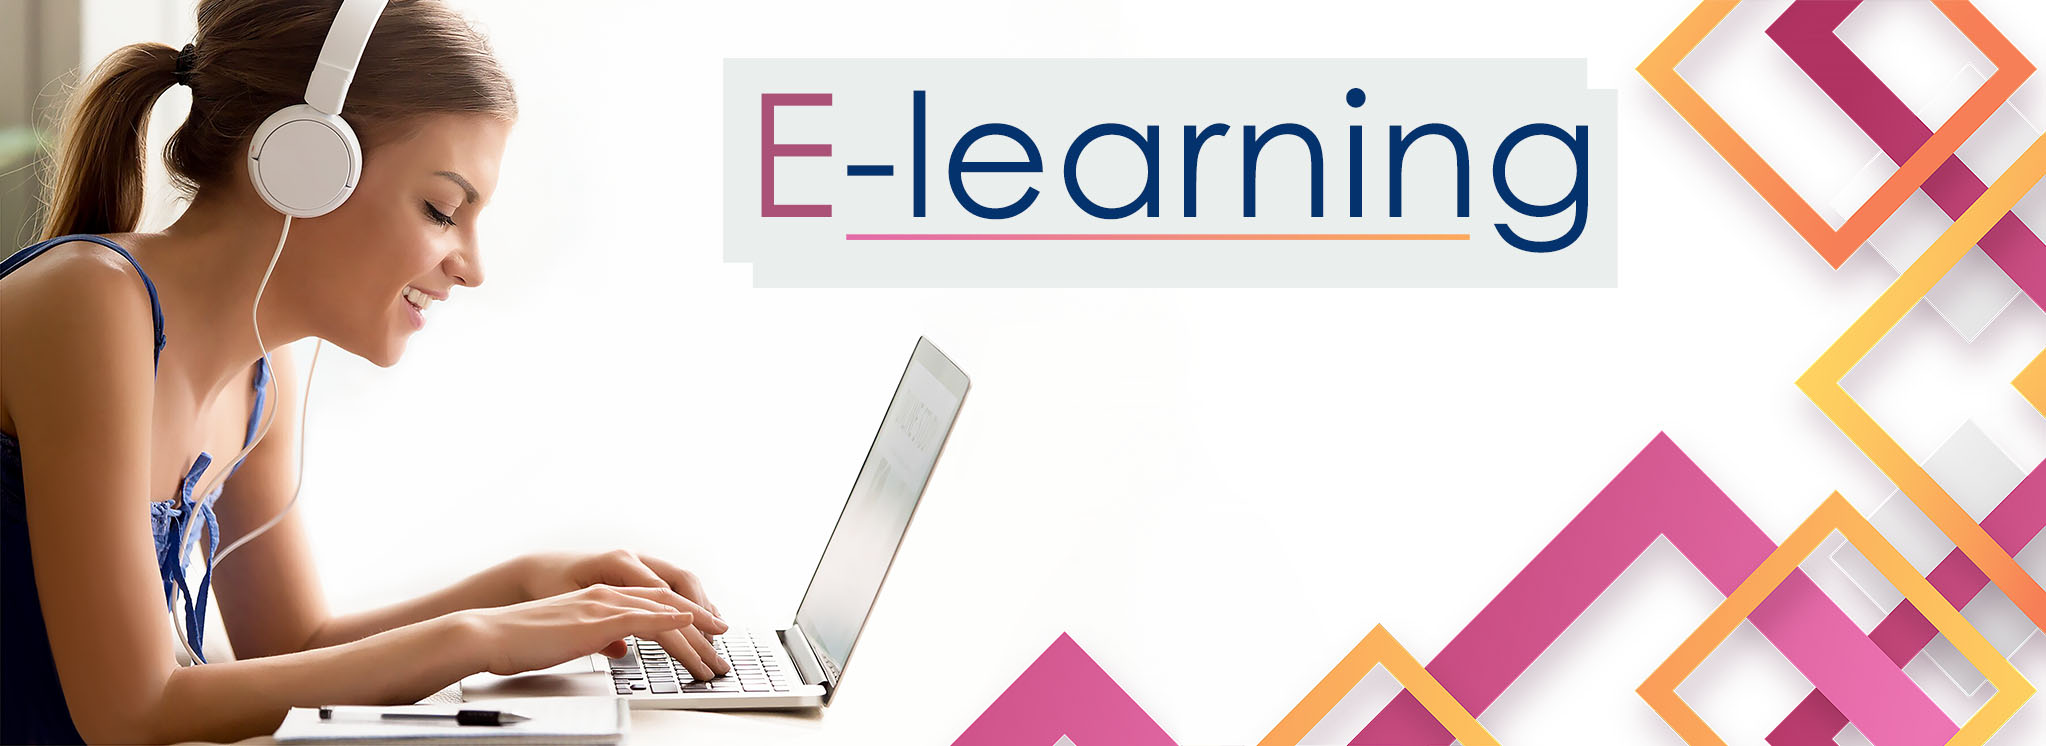 Cours d'anglais en ligne tous niveaux éligibles CPF E-Learning - Mortimer English Club